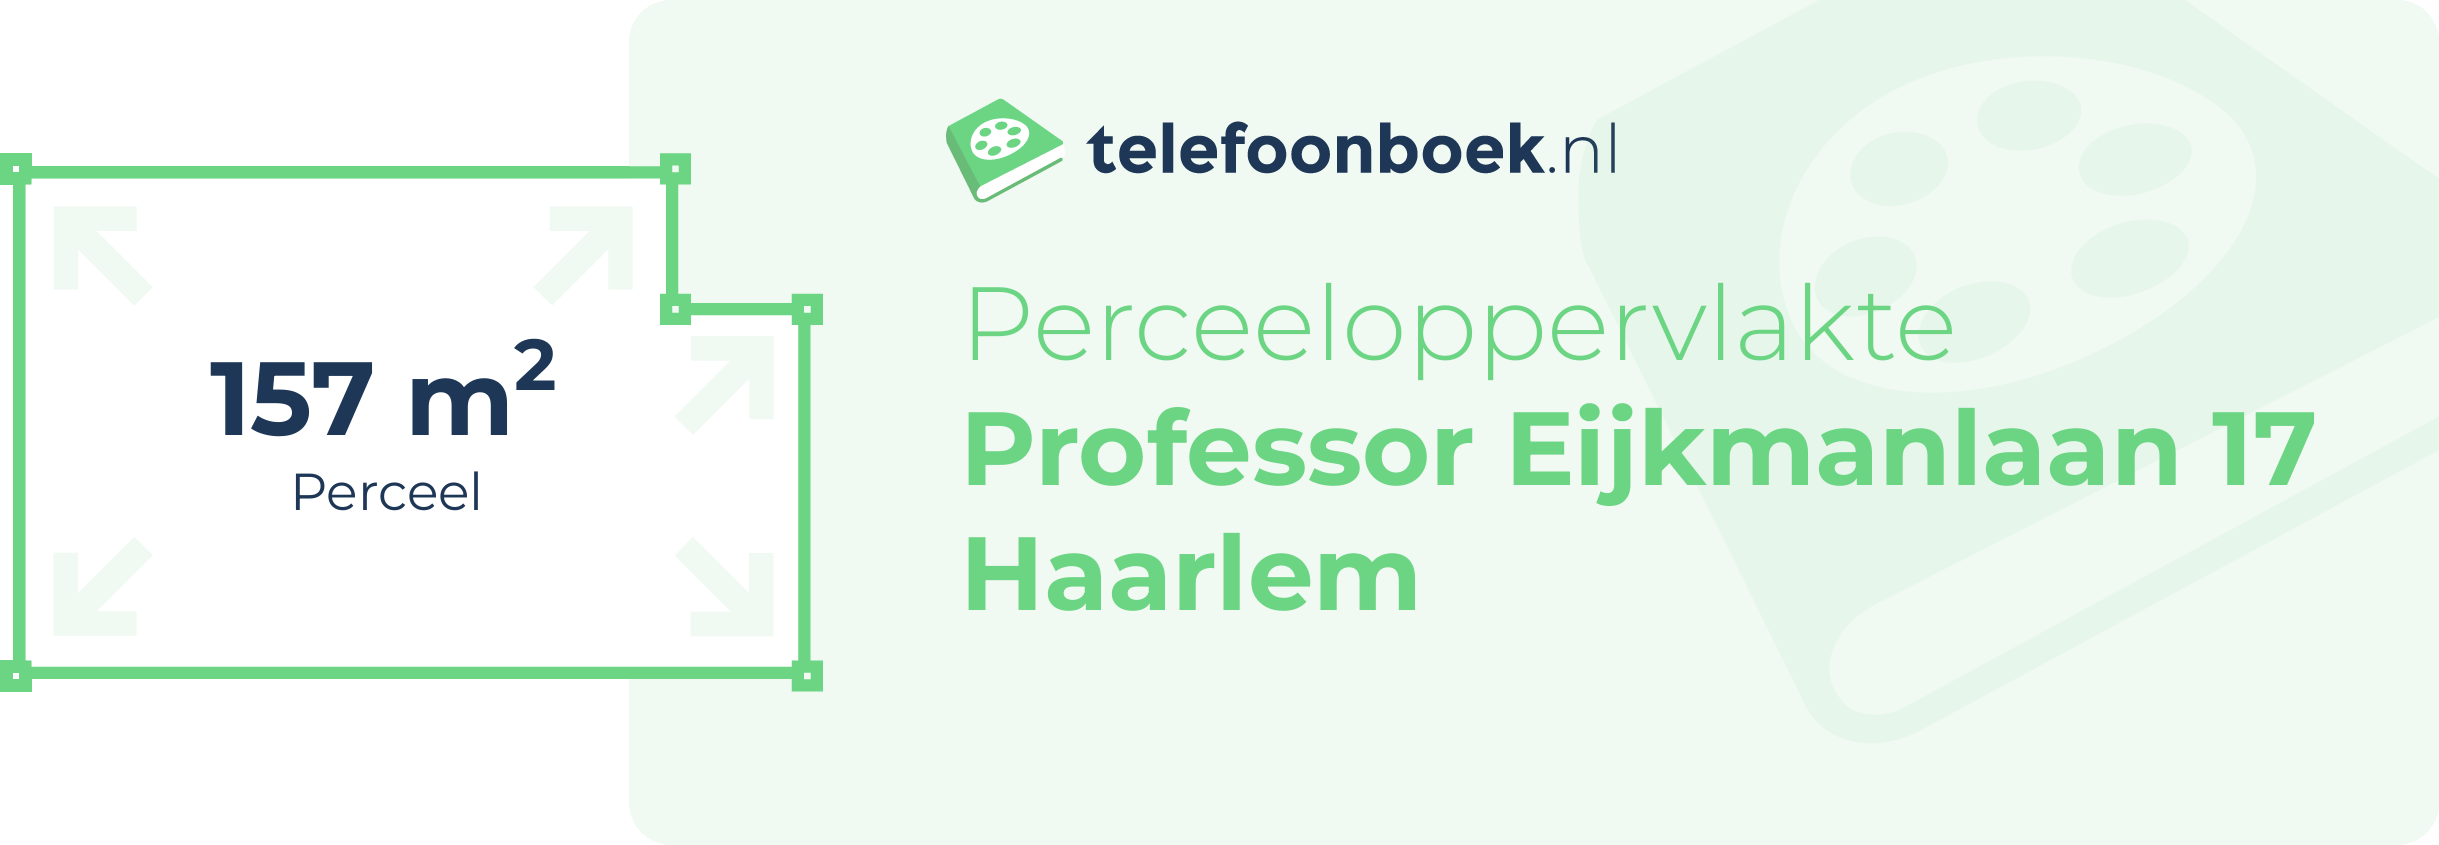 Perceeloppervlakte Professor Eijkmanlaan 17 Haarlem